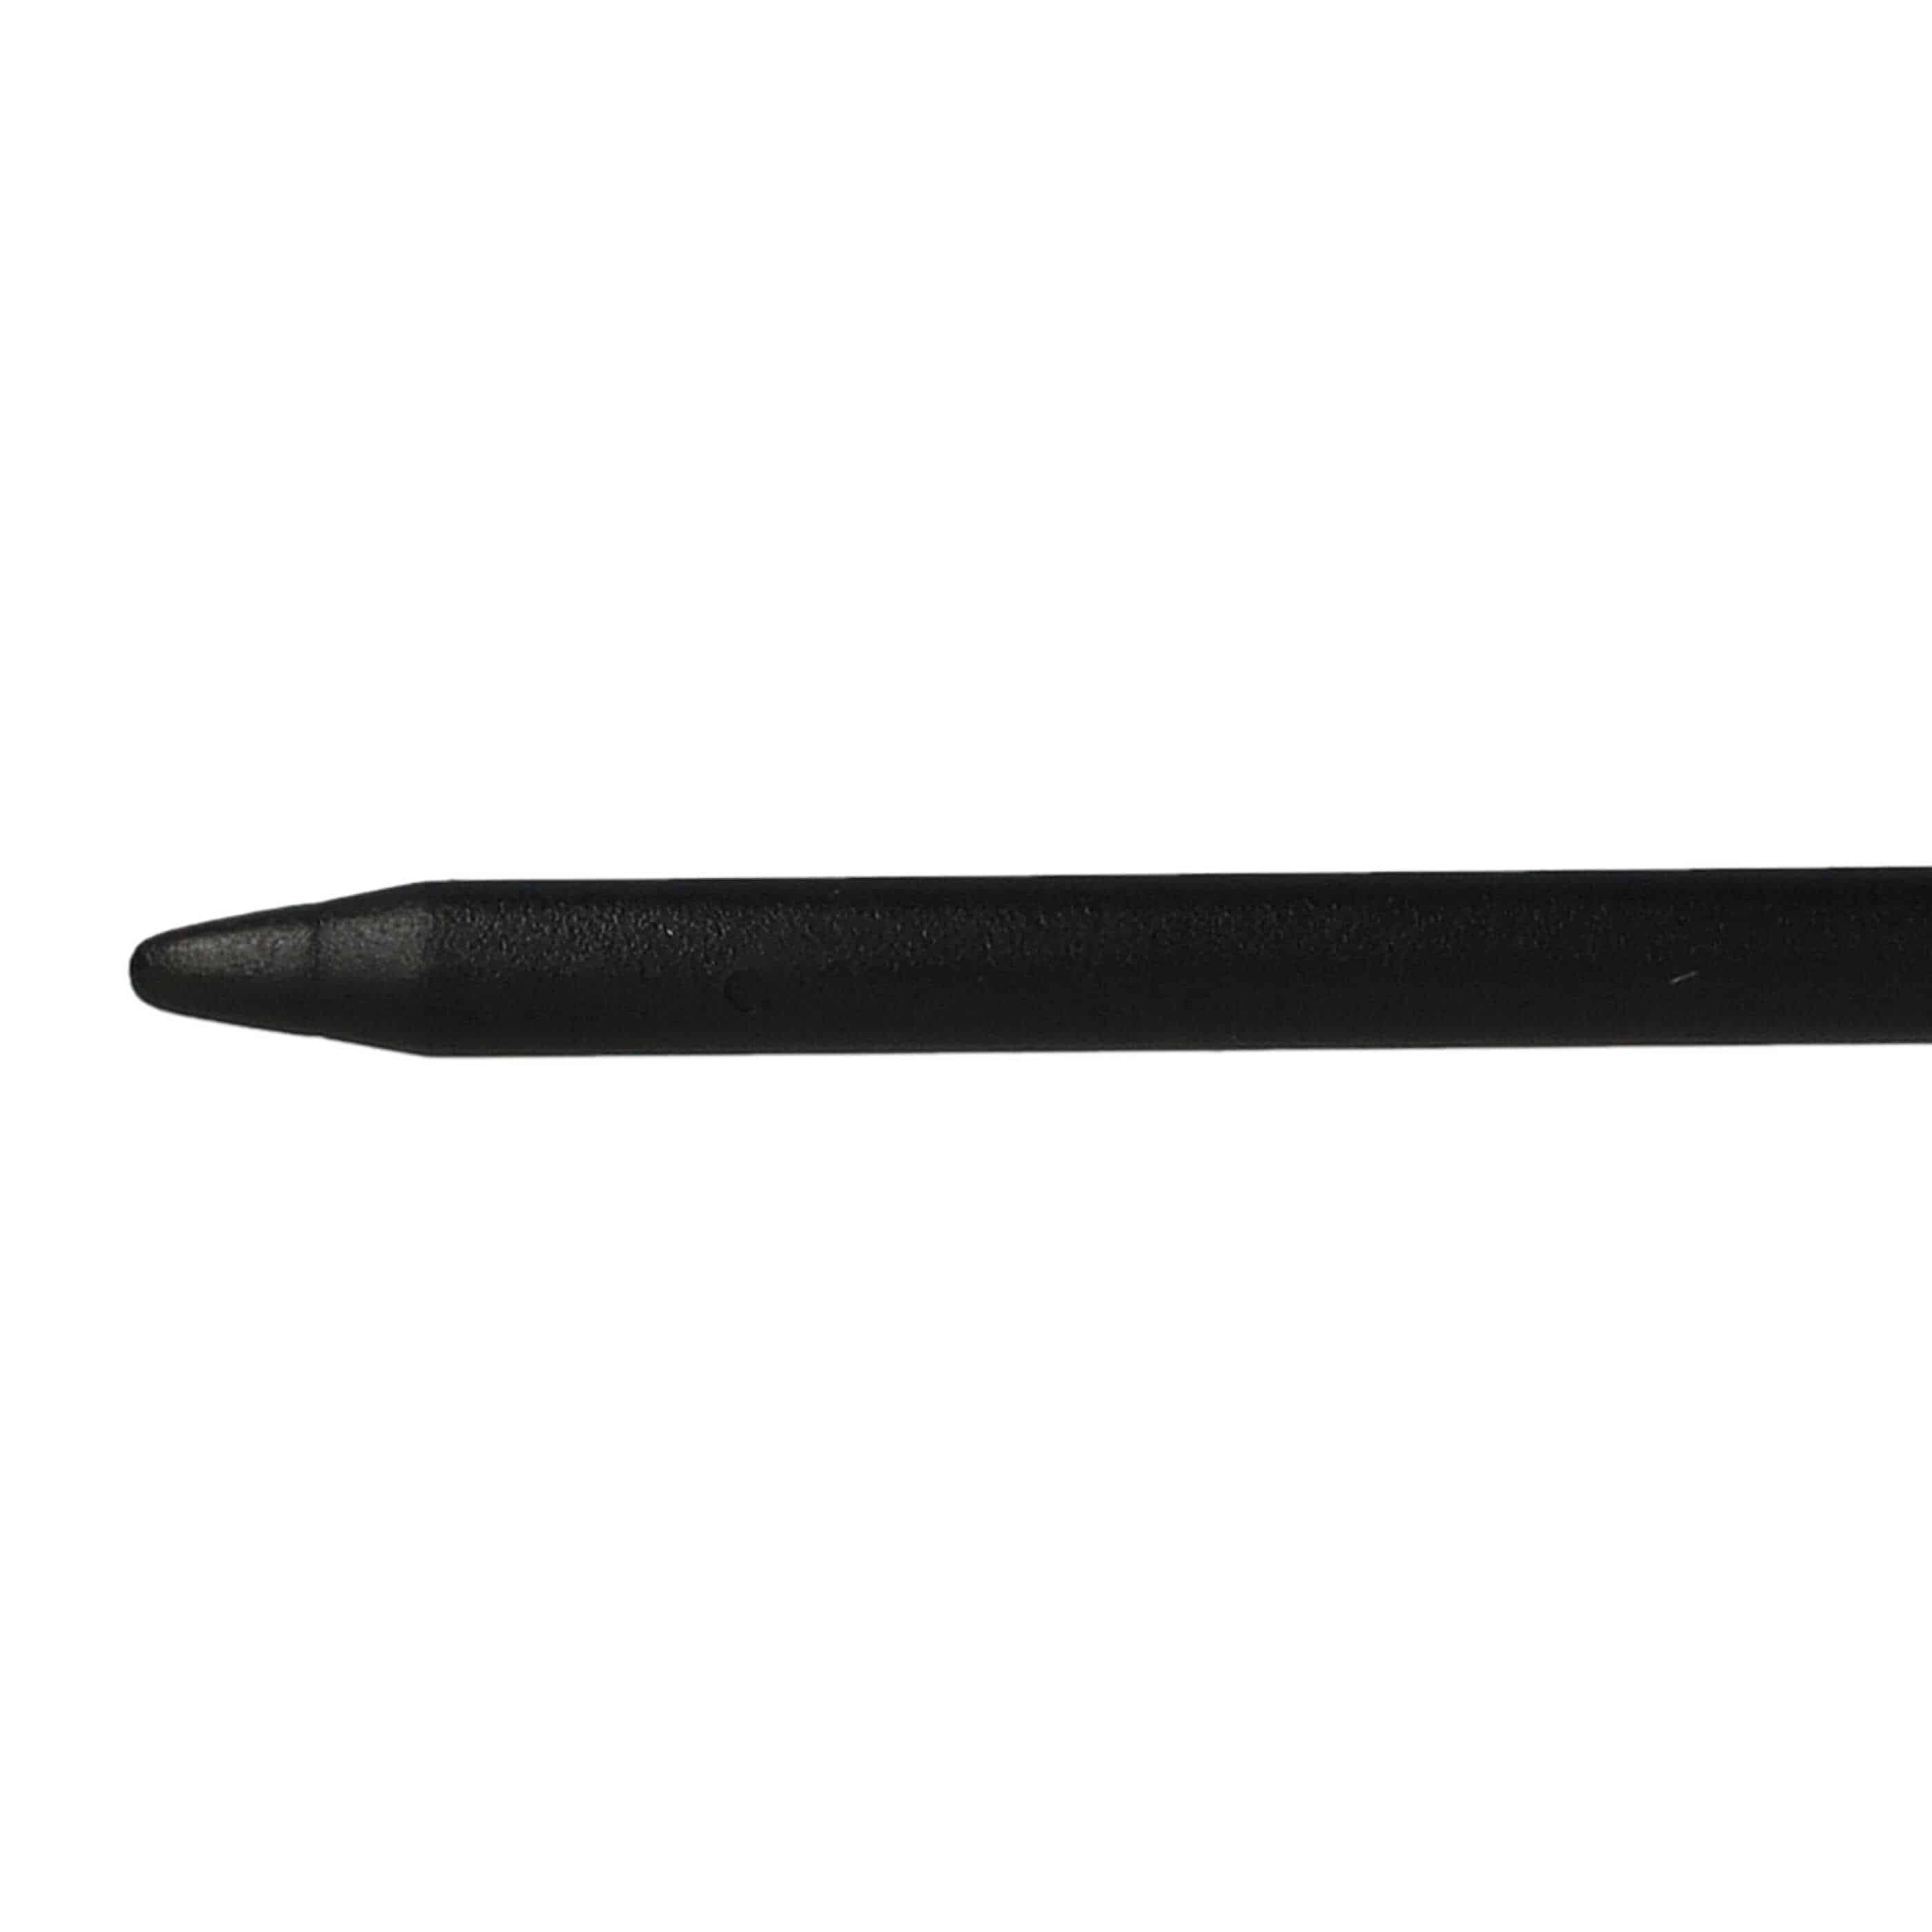 10x Rysik touch pen do konsoli Nintendo New 3DS - czarny, biały